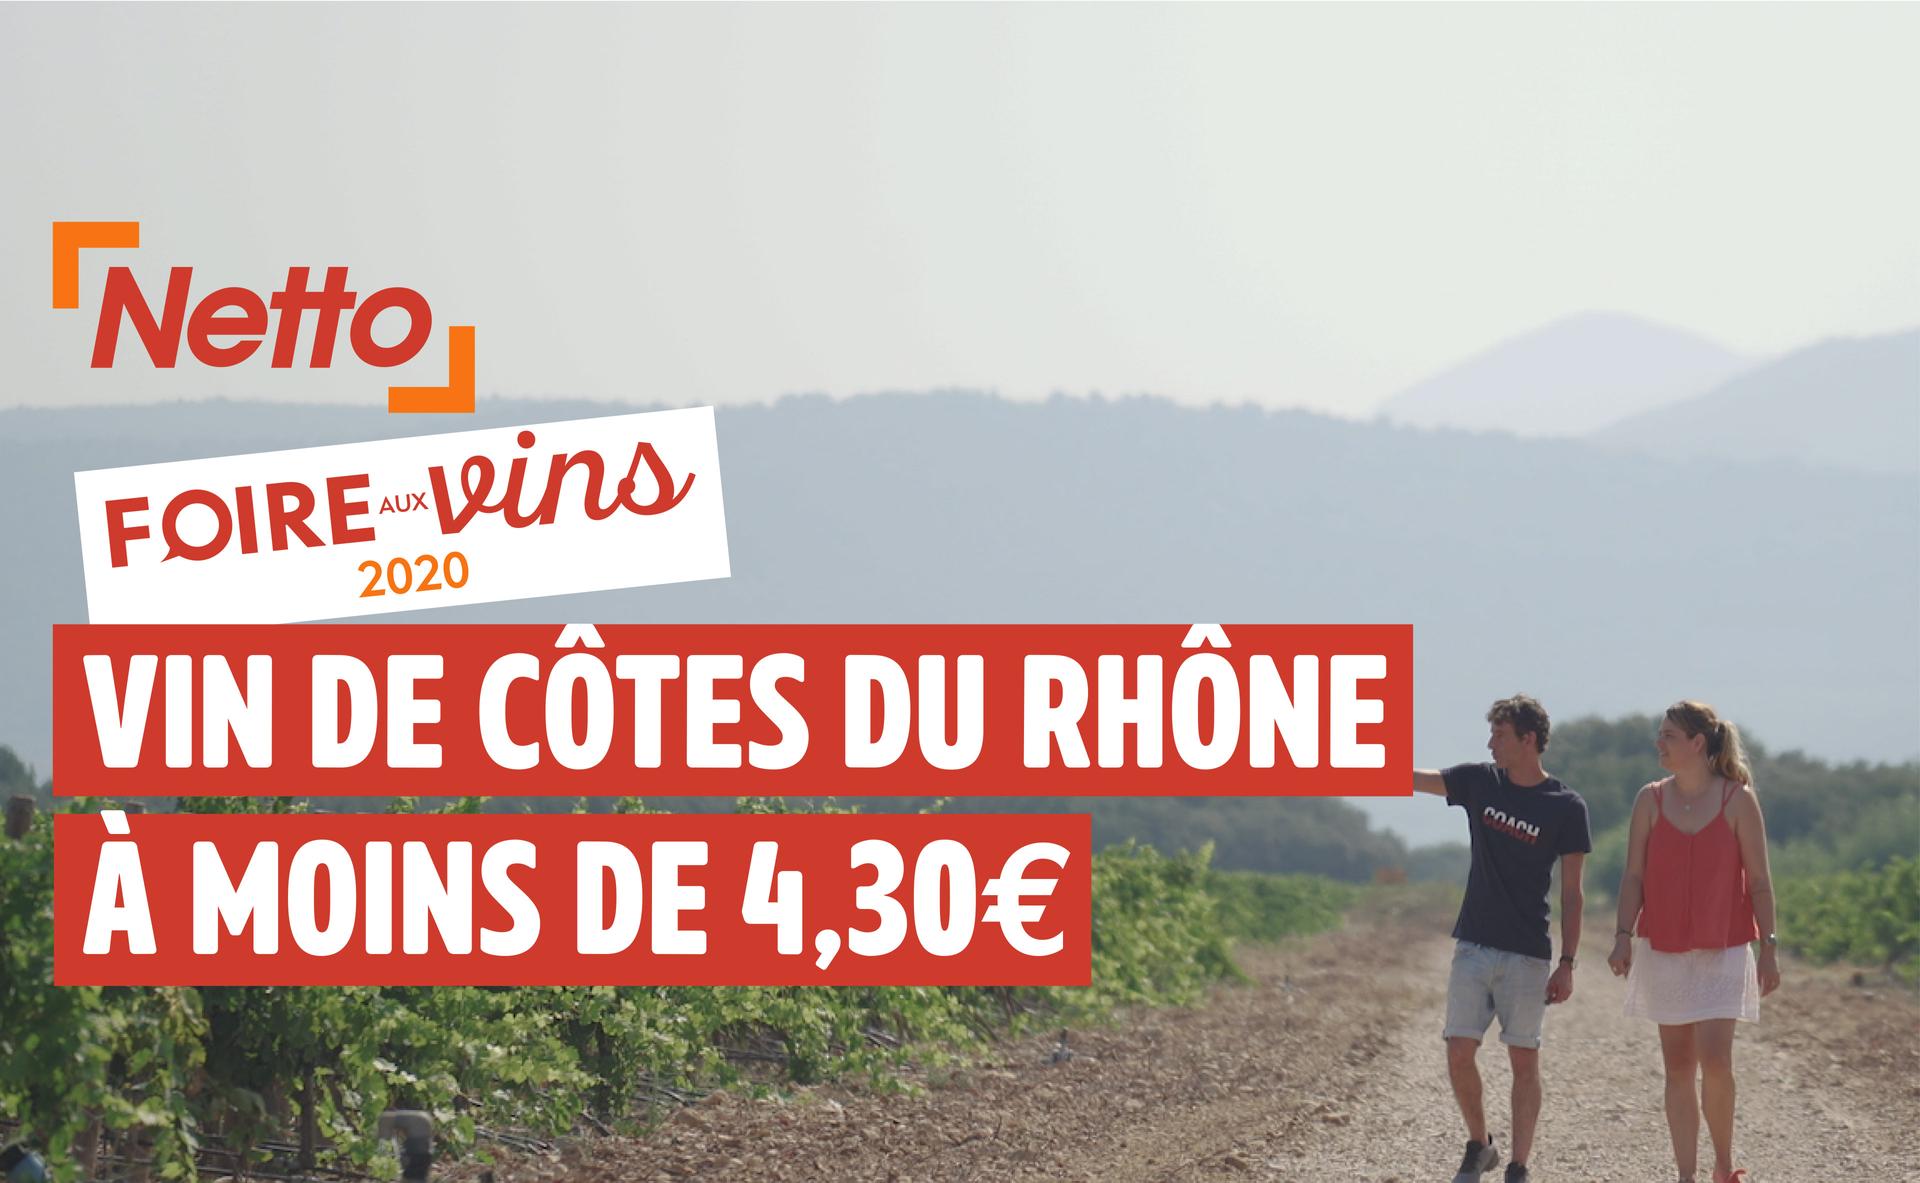 Foire aux vins 2020 : AOP Côtes du Rhône Village Plan de Dieu